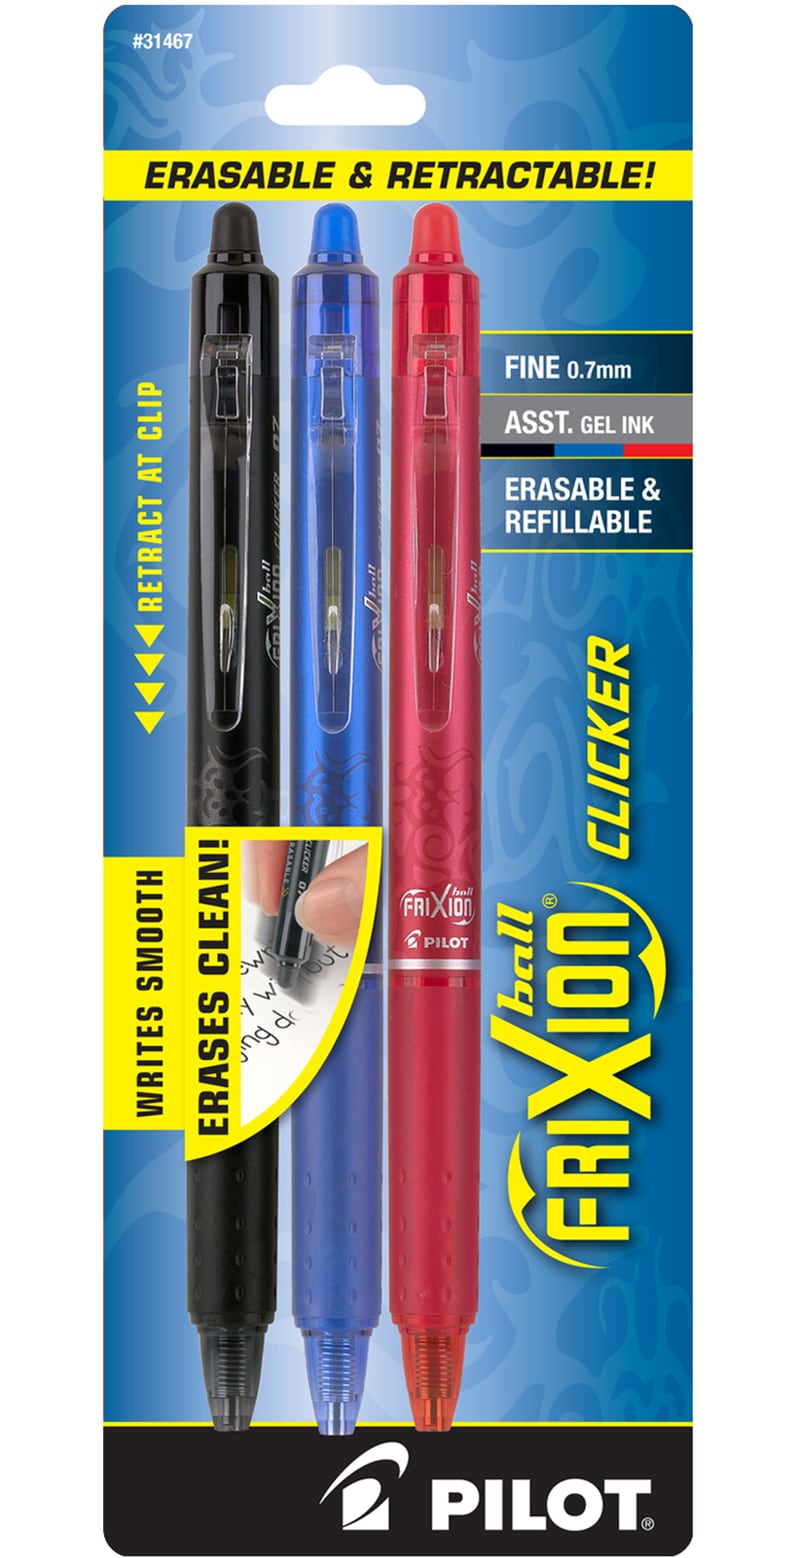 Pilot Frixion Clicker Erasable Gel Ink Pen - Black/Blue/Red - 3 Pack